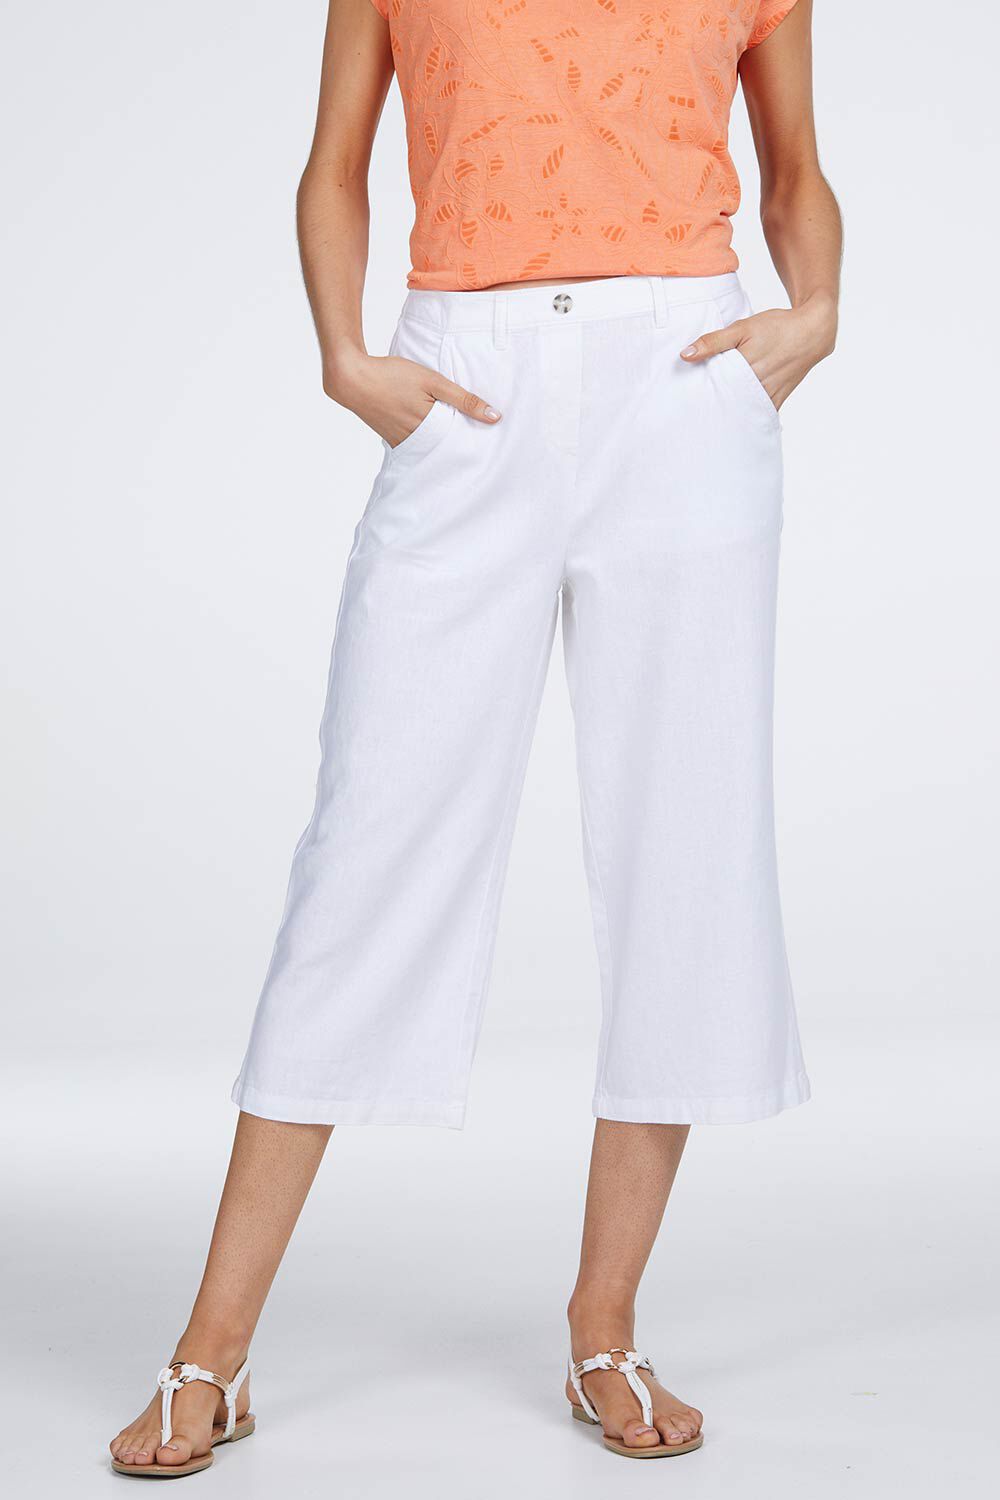 ladies white capri trousers